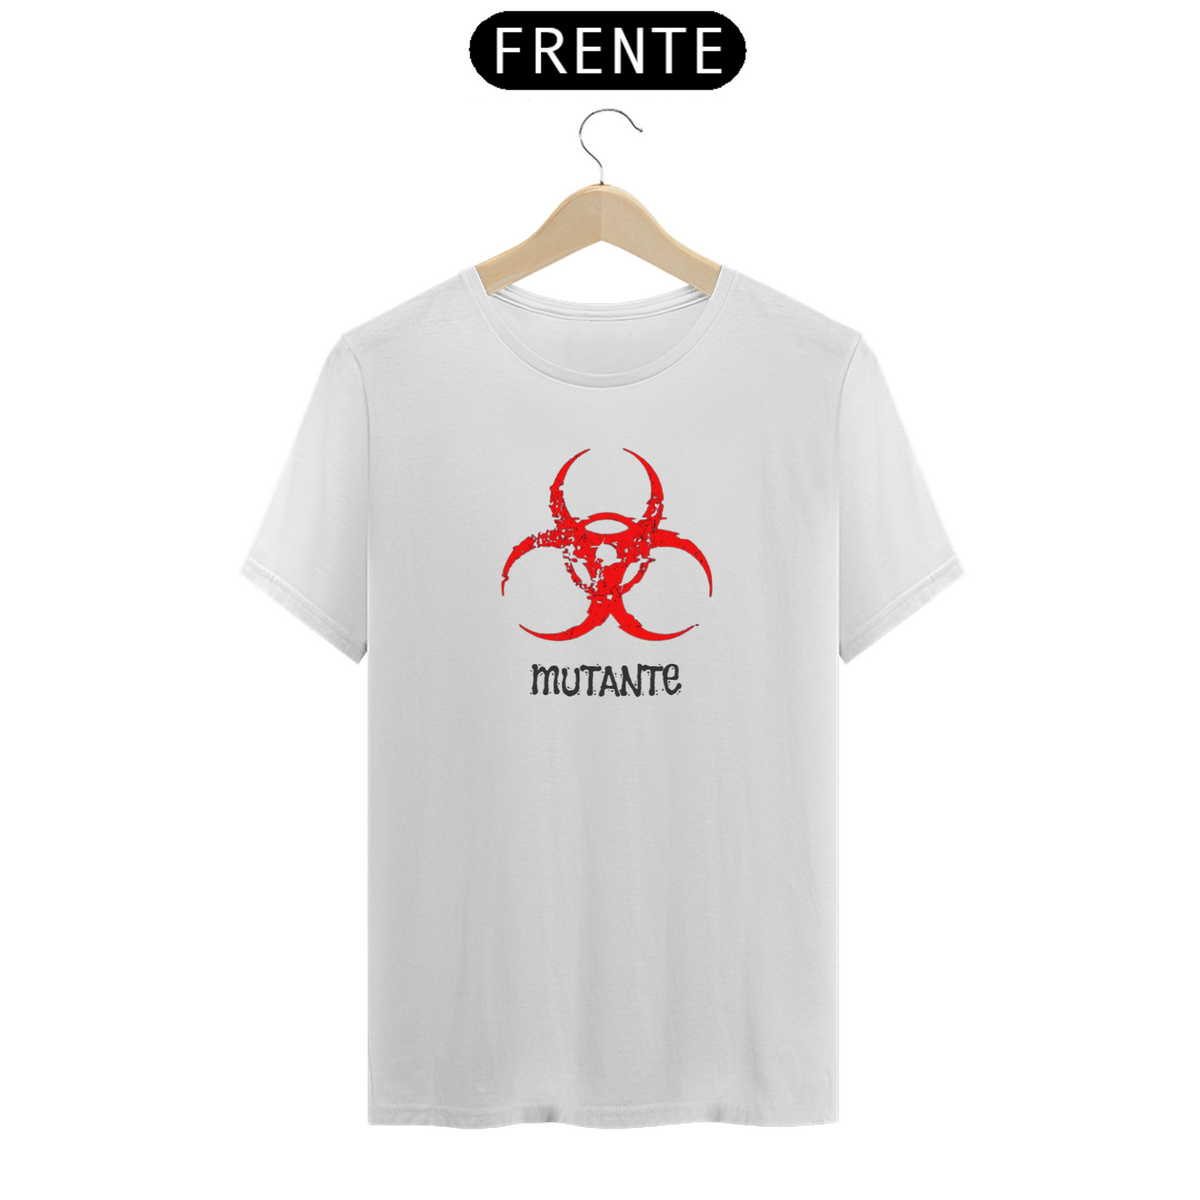 Nome do produto: T-shirt Mutante